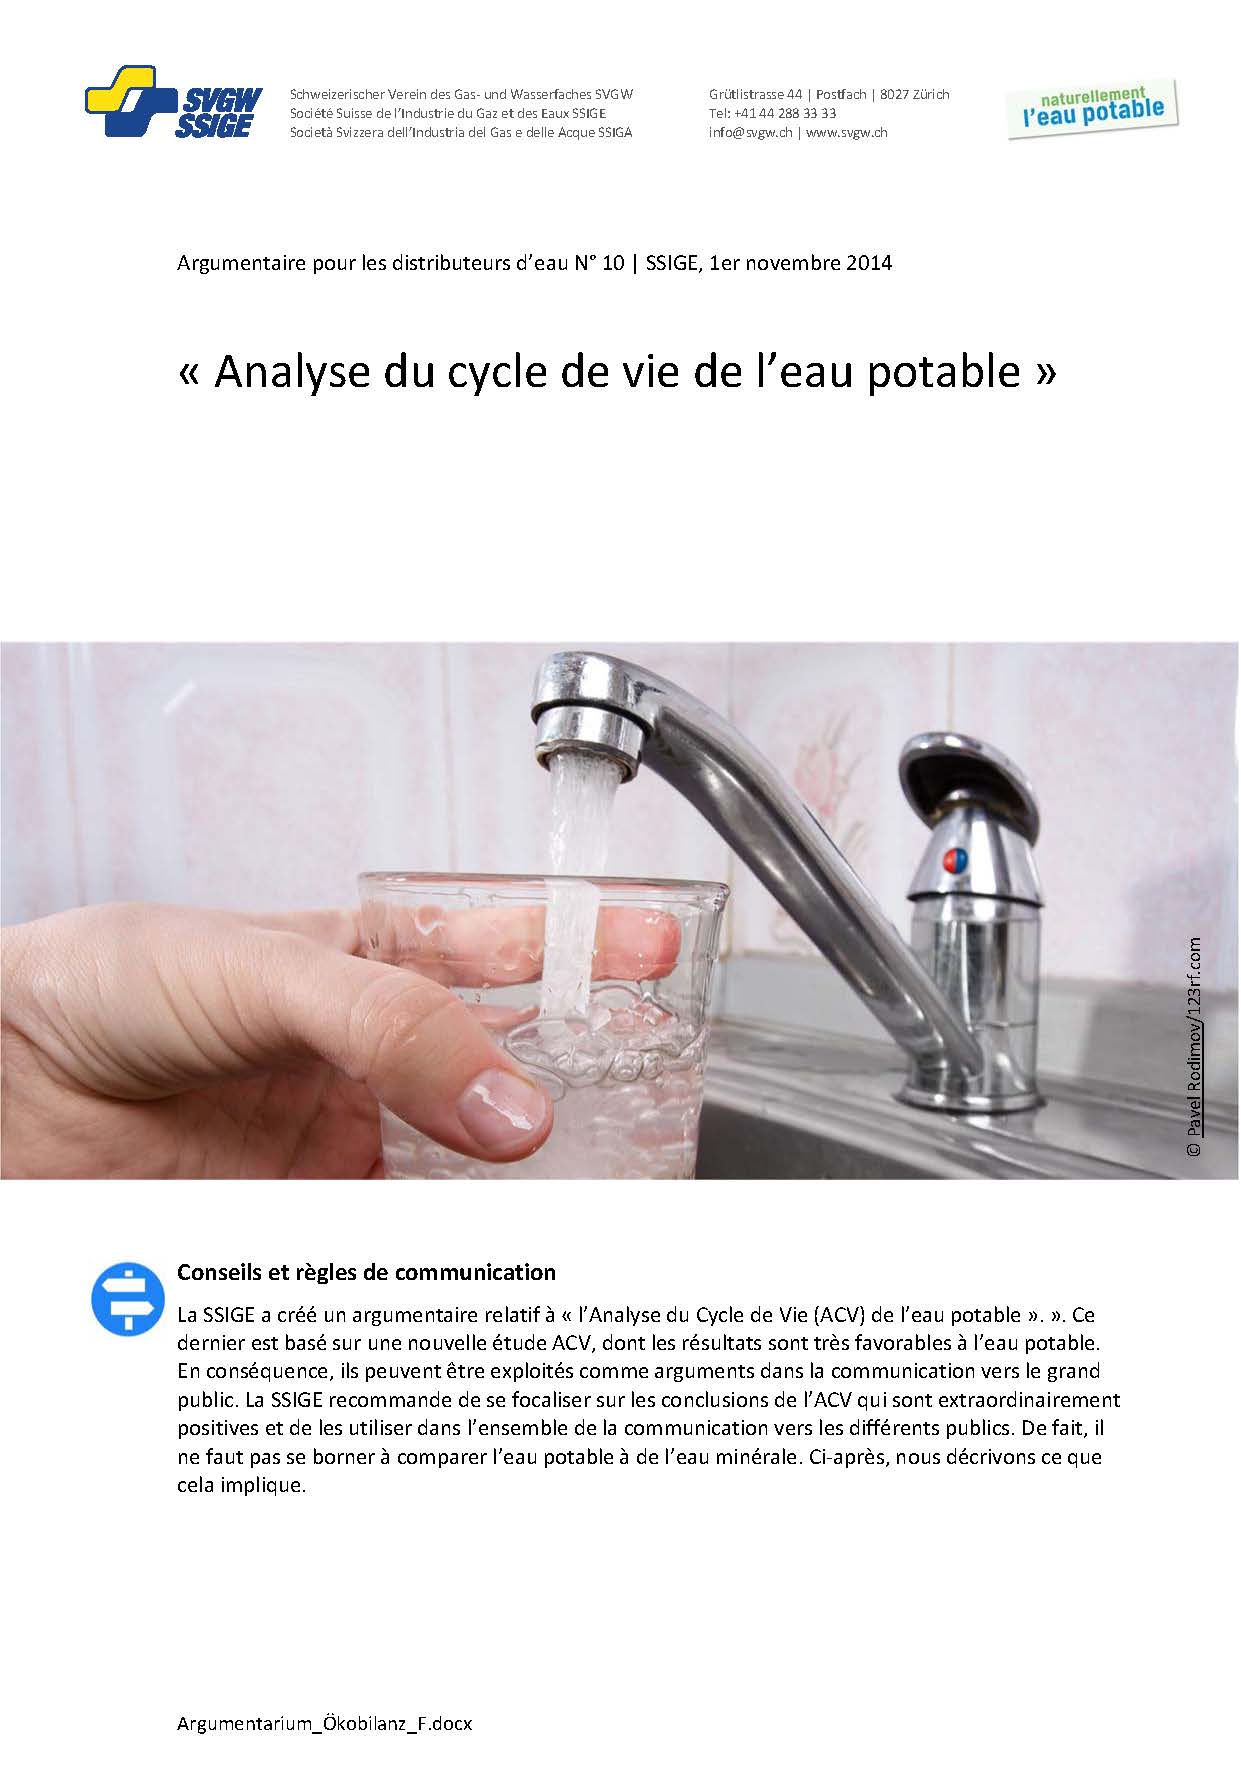 Argumentaire: «Analyse du cycle de vie de l'eau potable»